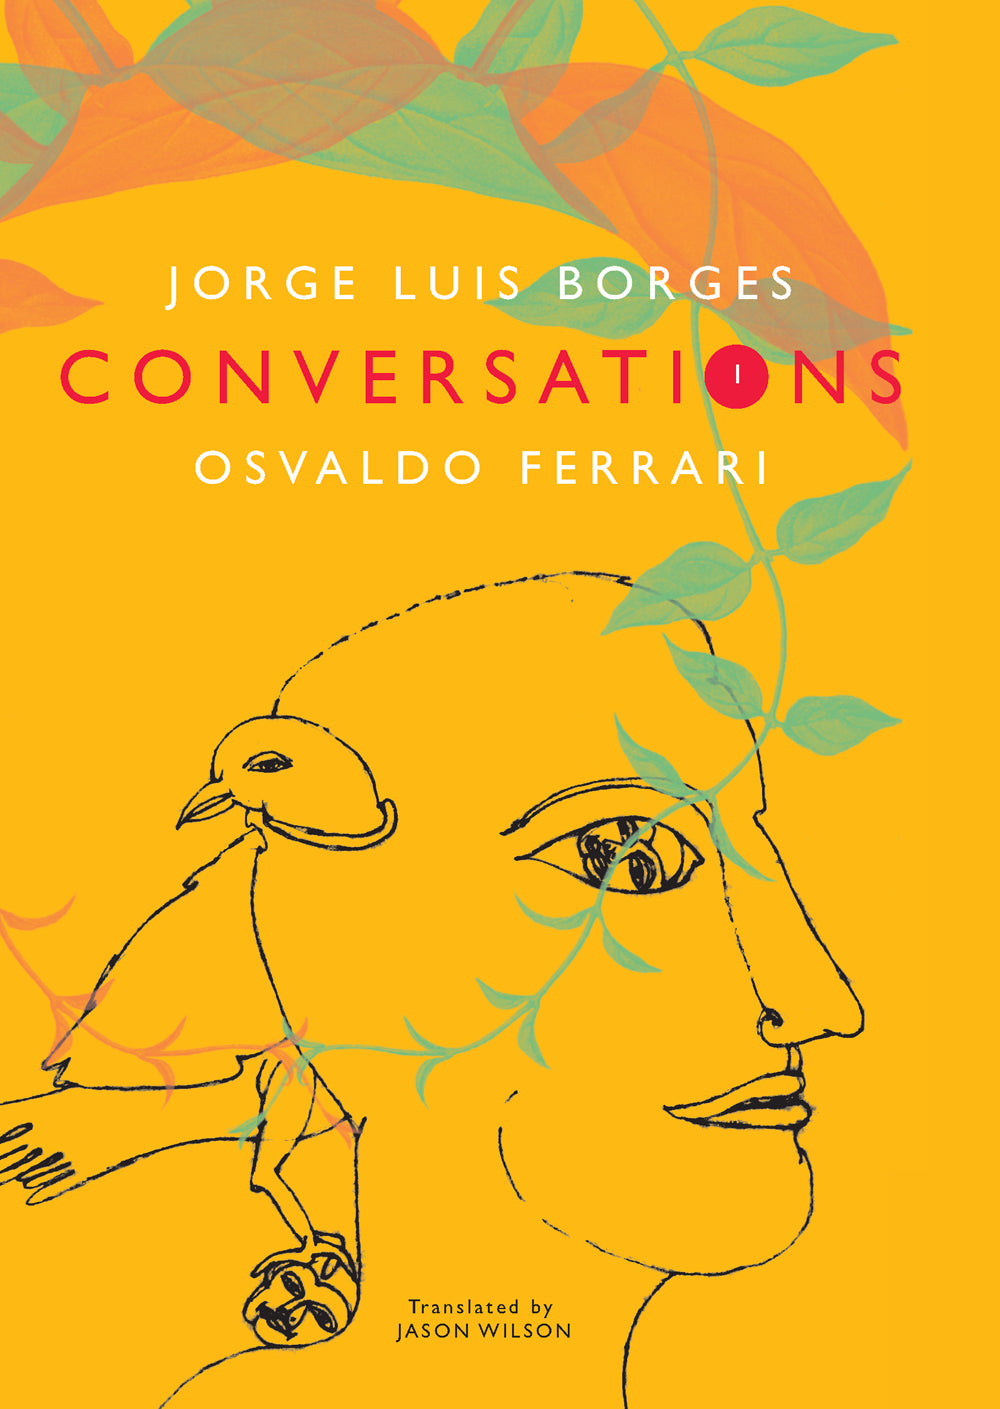 Conversations, Volume 1: Jorge Luis Borges and Osvaldo Ferrari